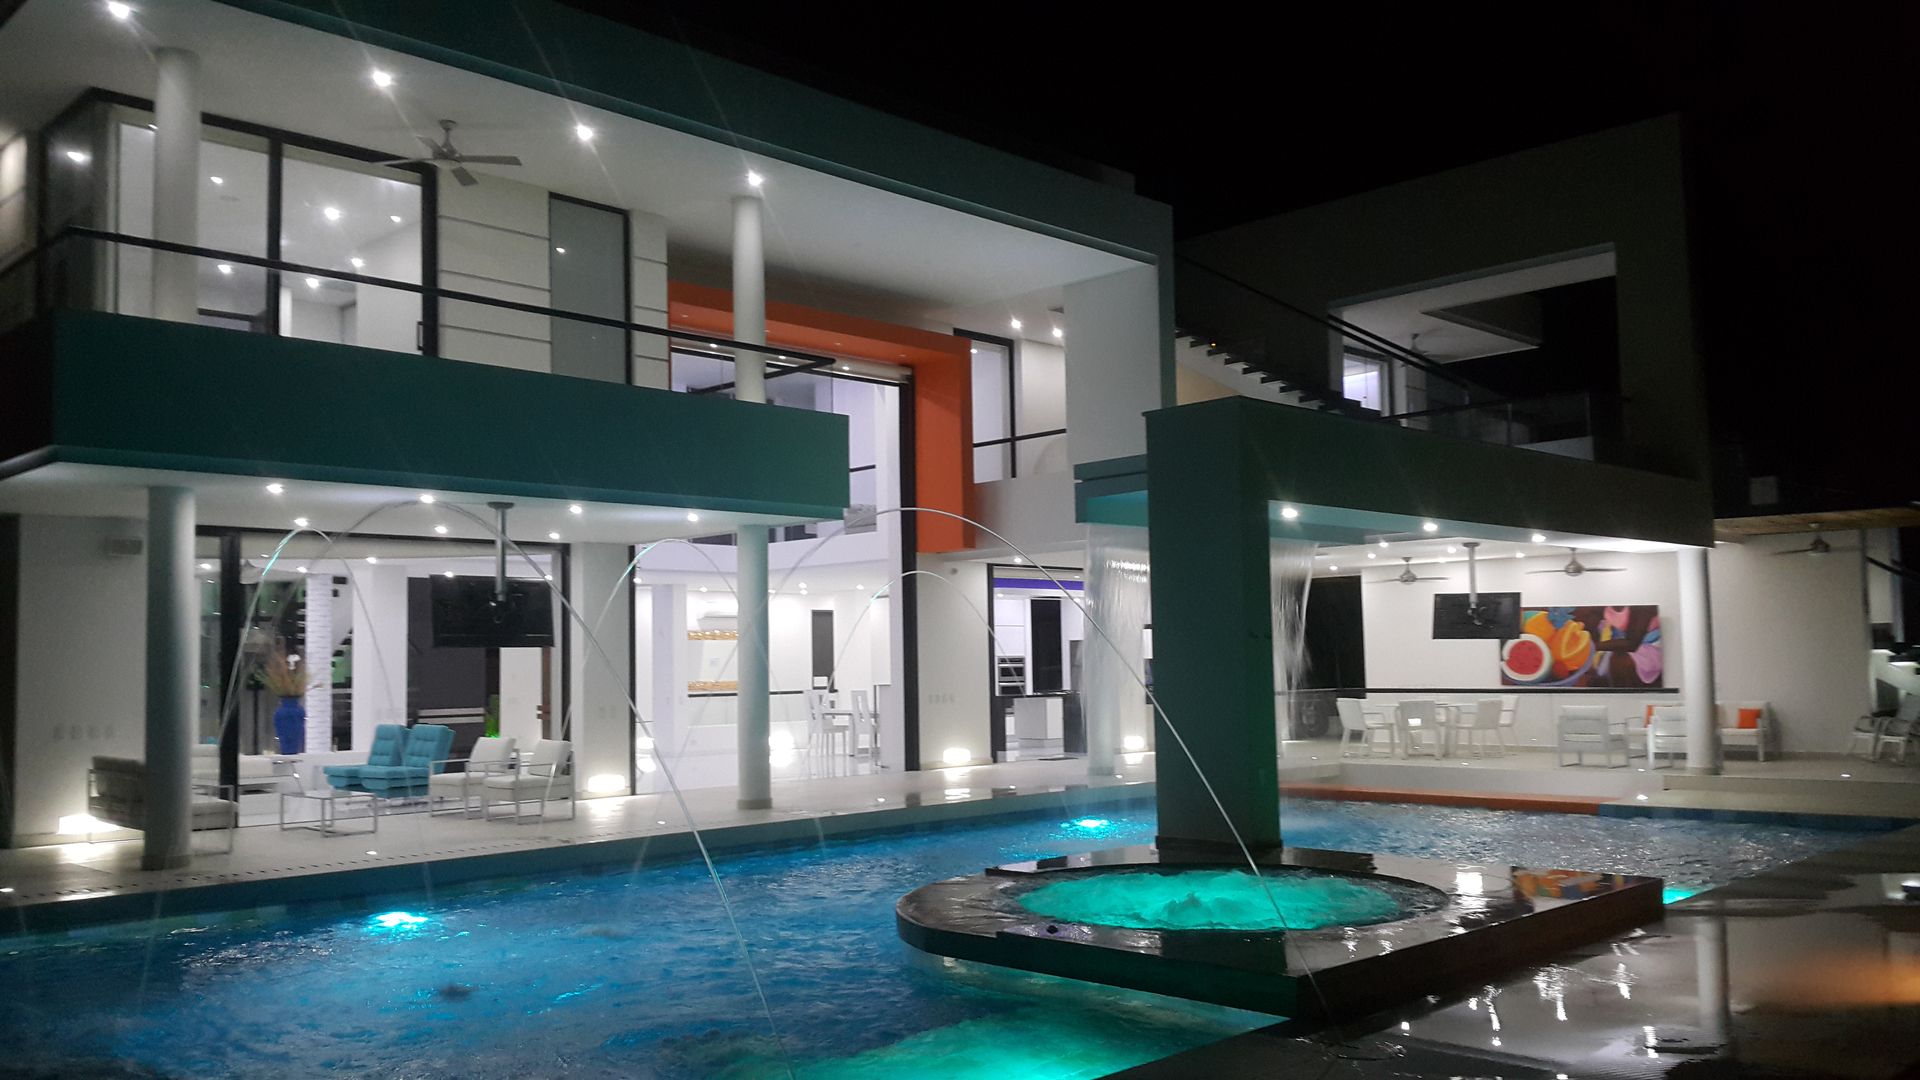 Vista nocturna piscina, fachada posterior homify Casas estilo moderno: ideas, arquitectura e imágenes Concreto